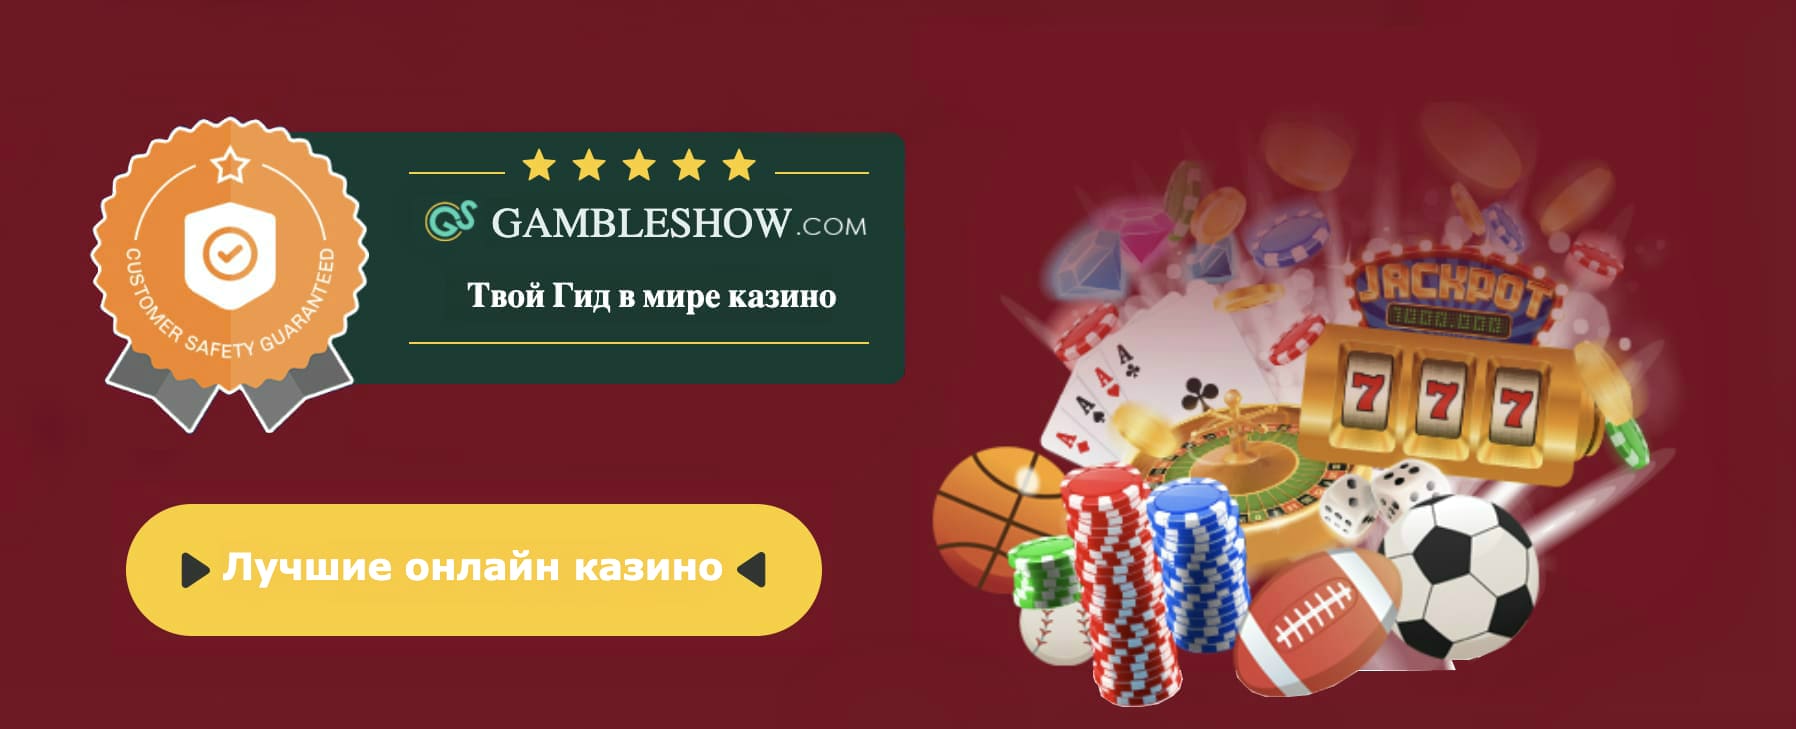 Азов сити казино оракул играть онлайн